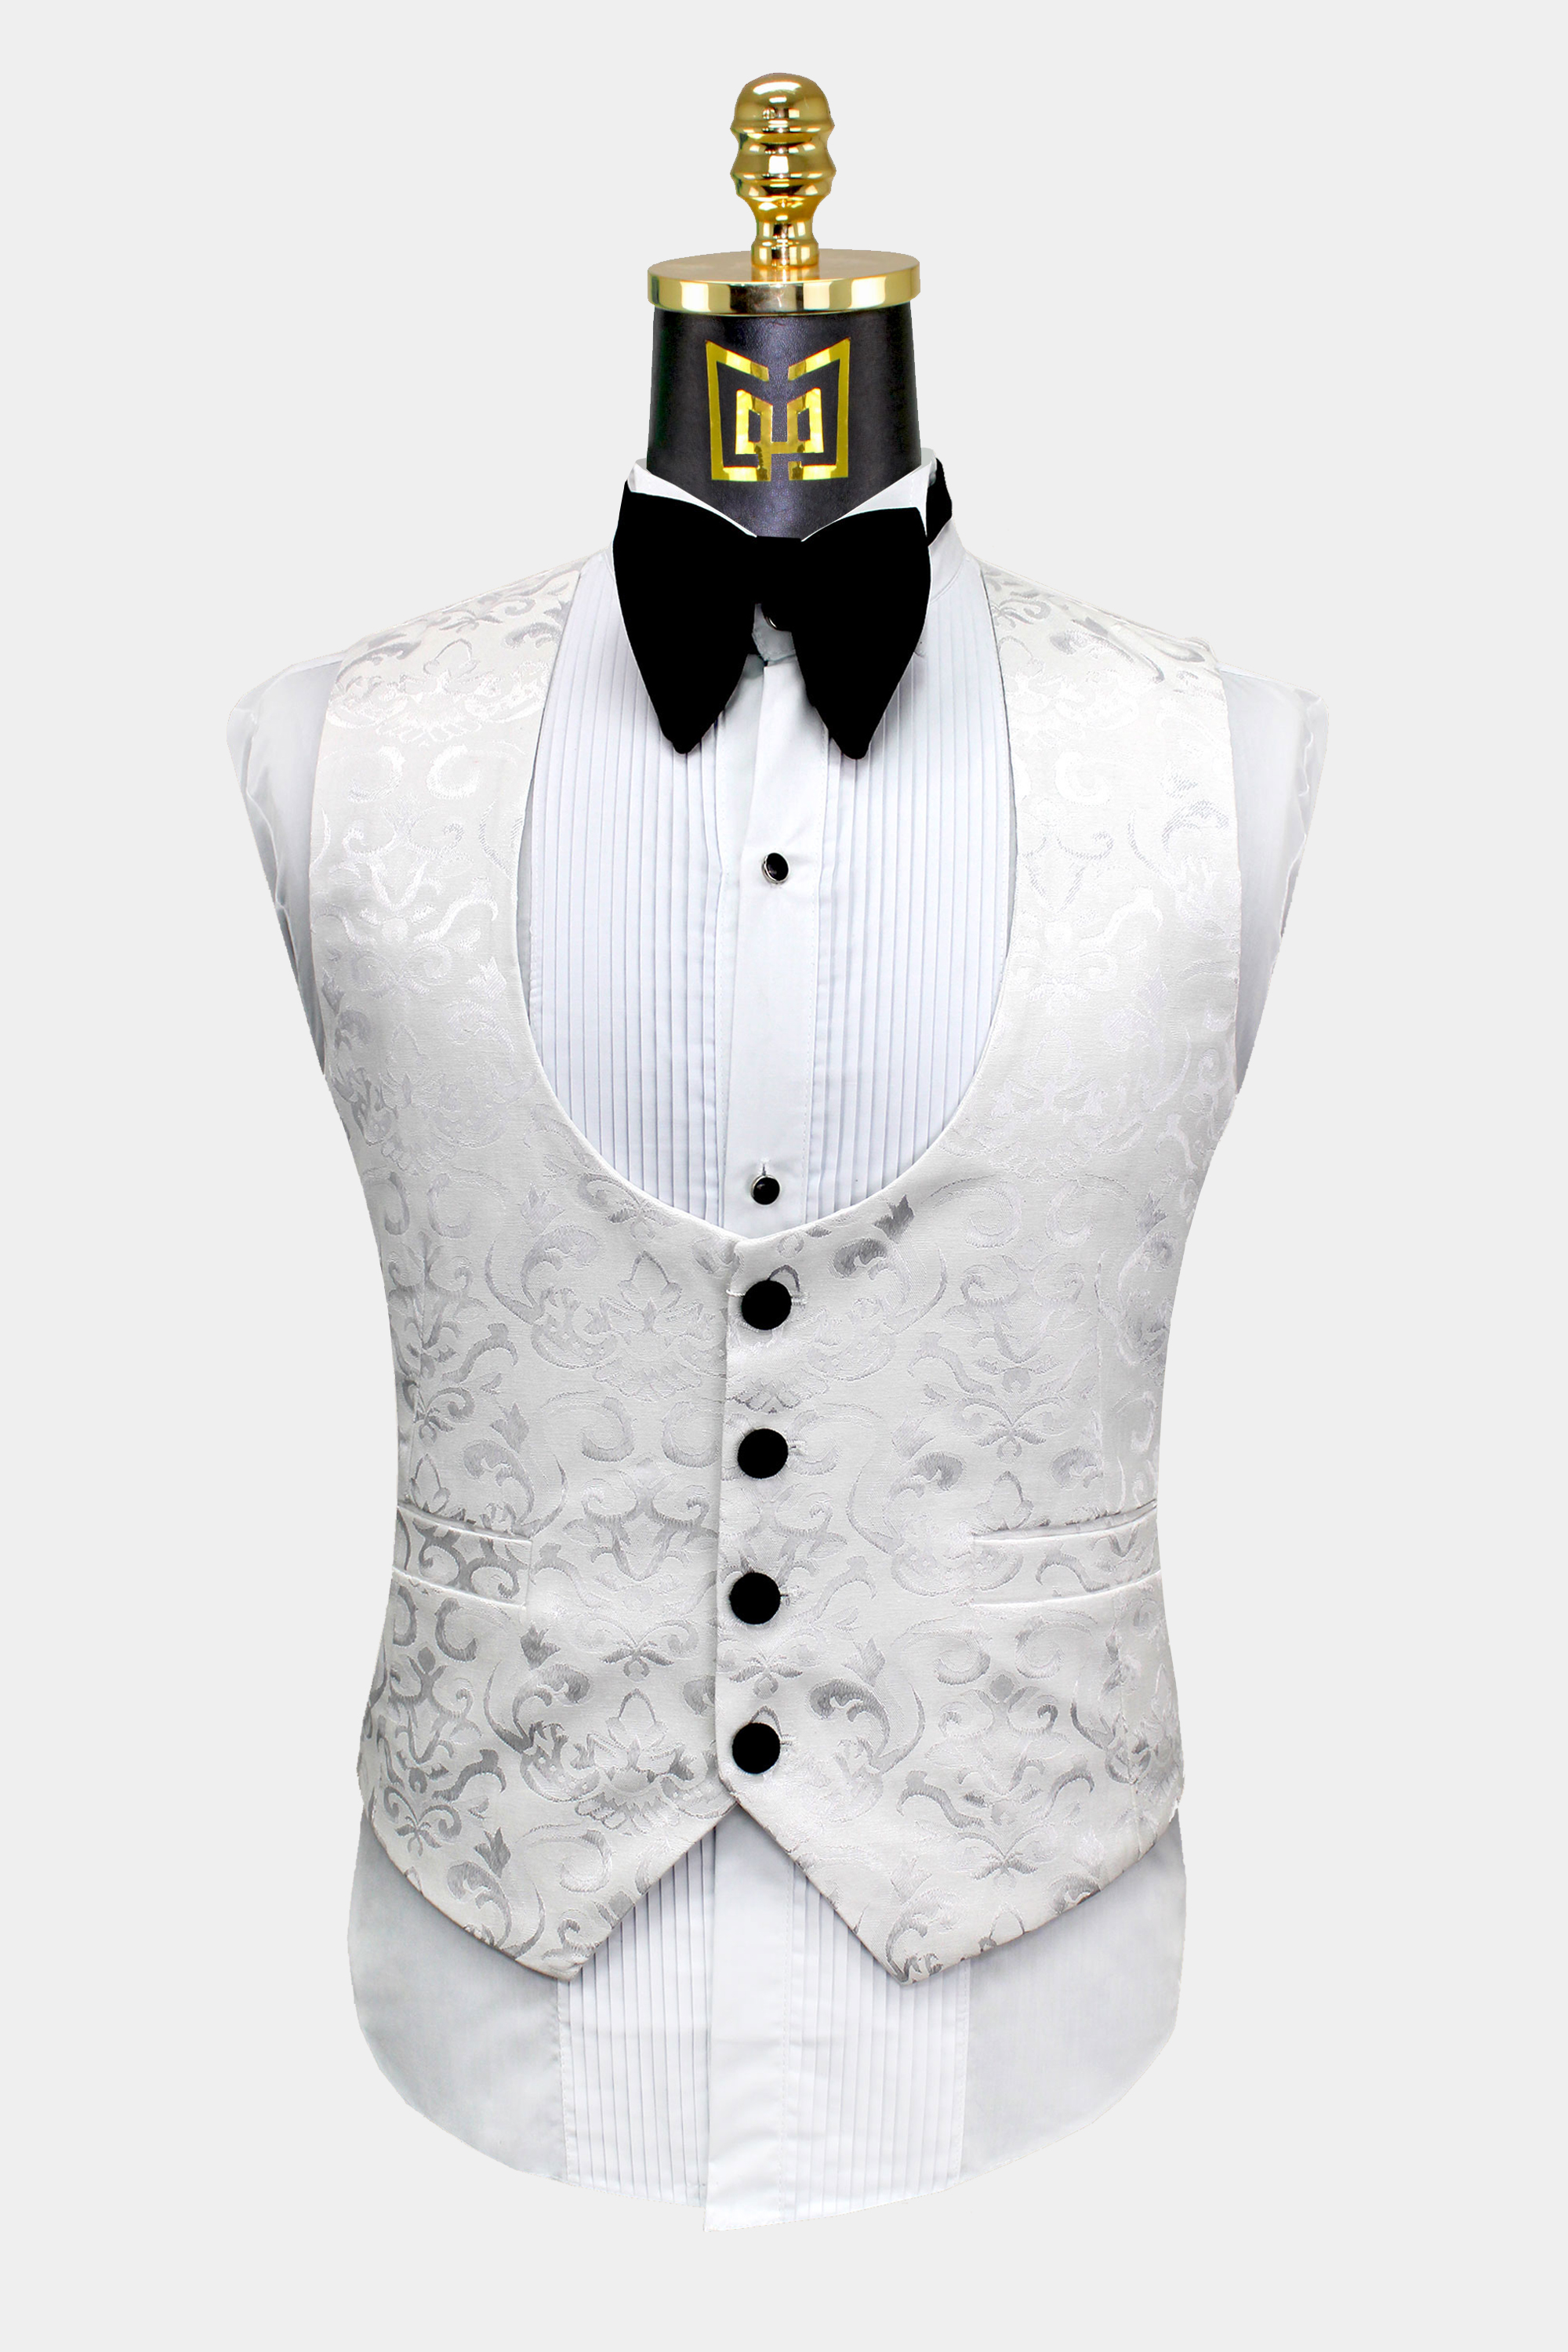 Mens-White-Tuxedo-Vest-Wedding-Groom-Suit-from-Gentlemansguru.Com_